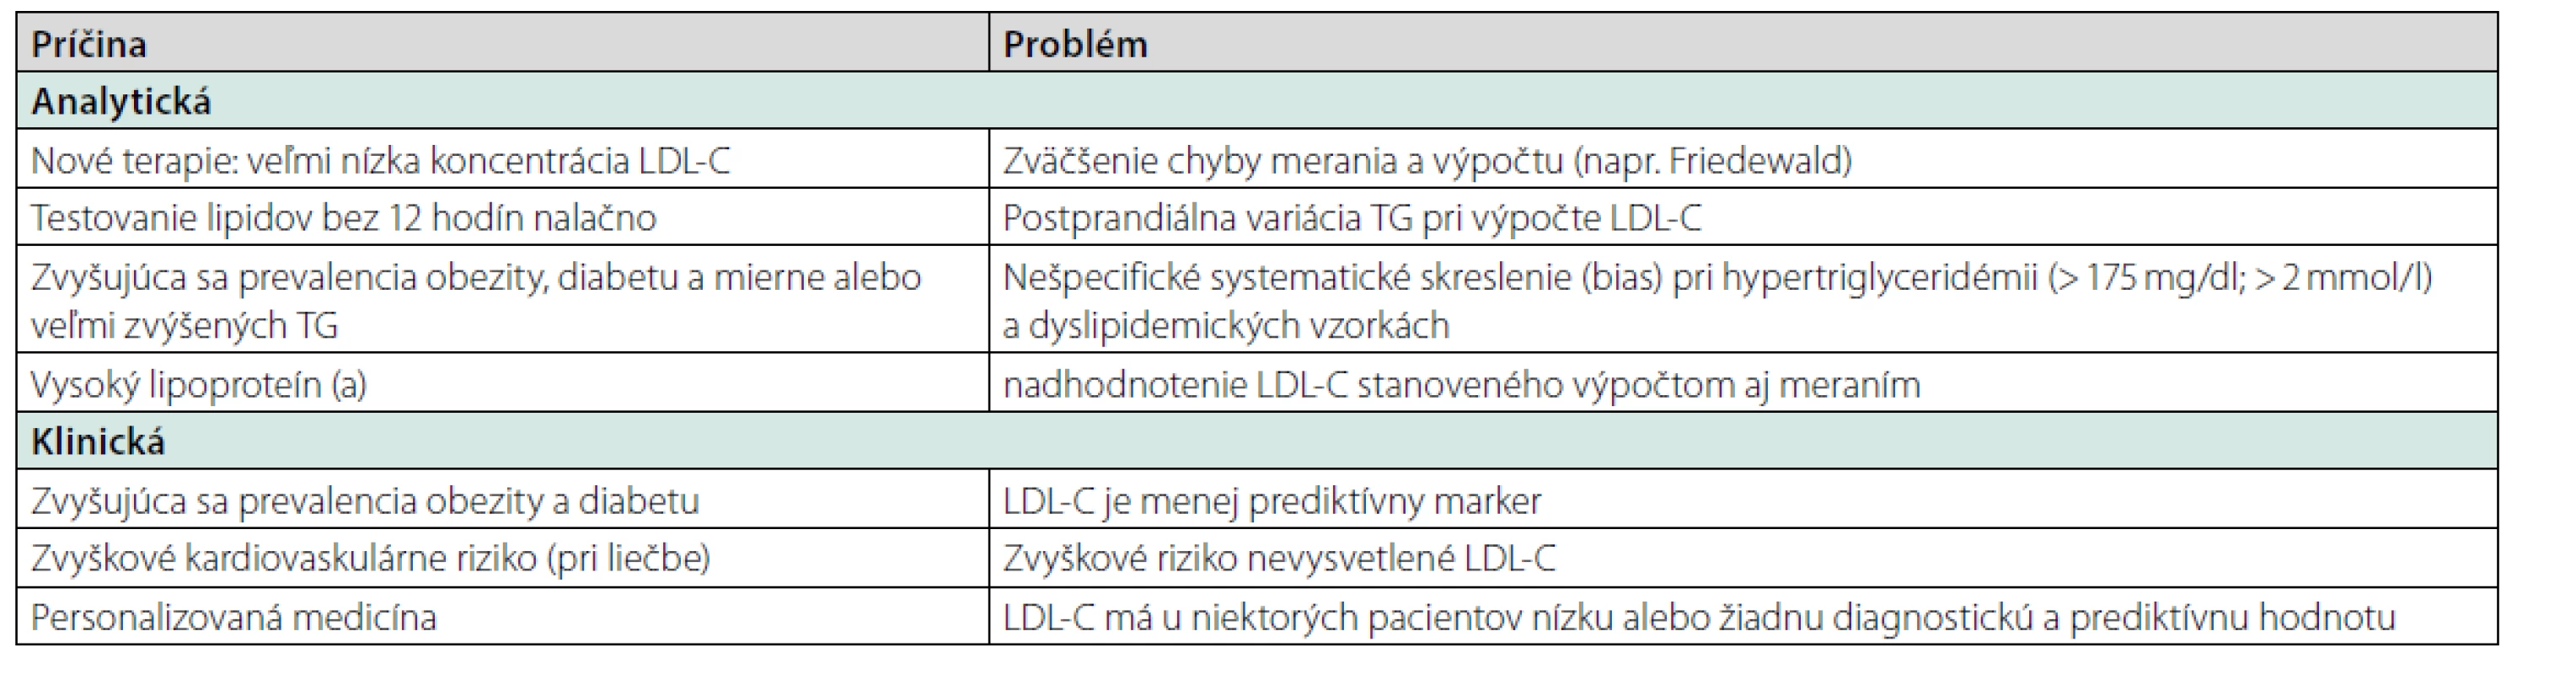 Súčasné problémy pri kvantifikácii LDL-C. Prevzaté z (19), čiastočne upravené